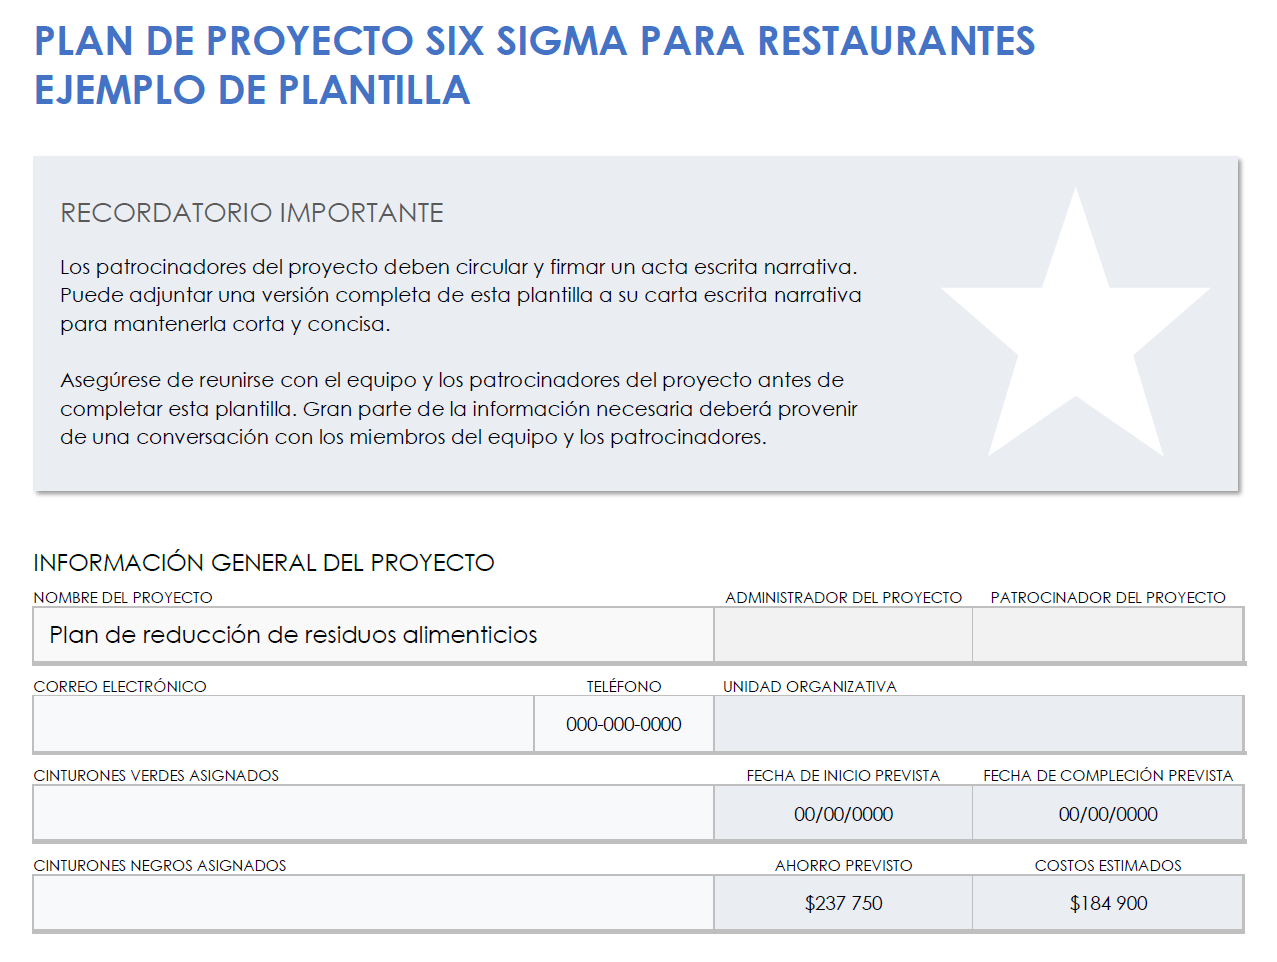 Ejemplo de carta de proyecto de restaurante Six Sigma